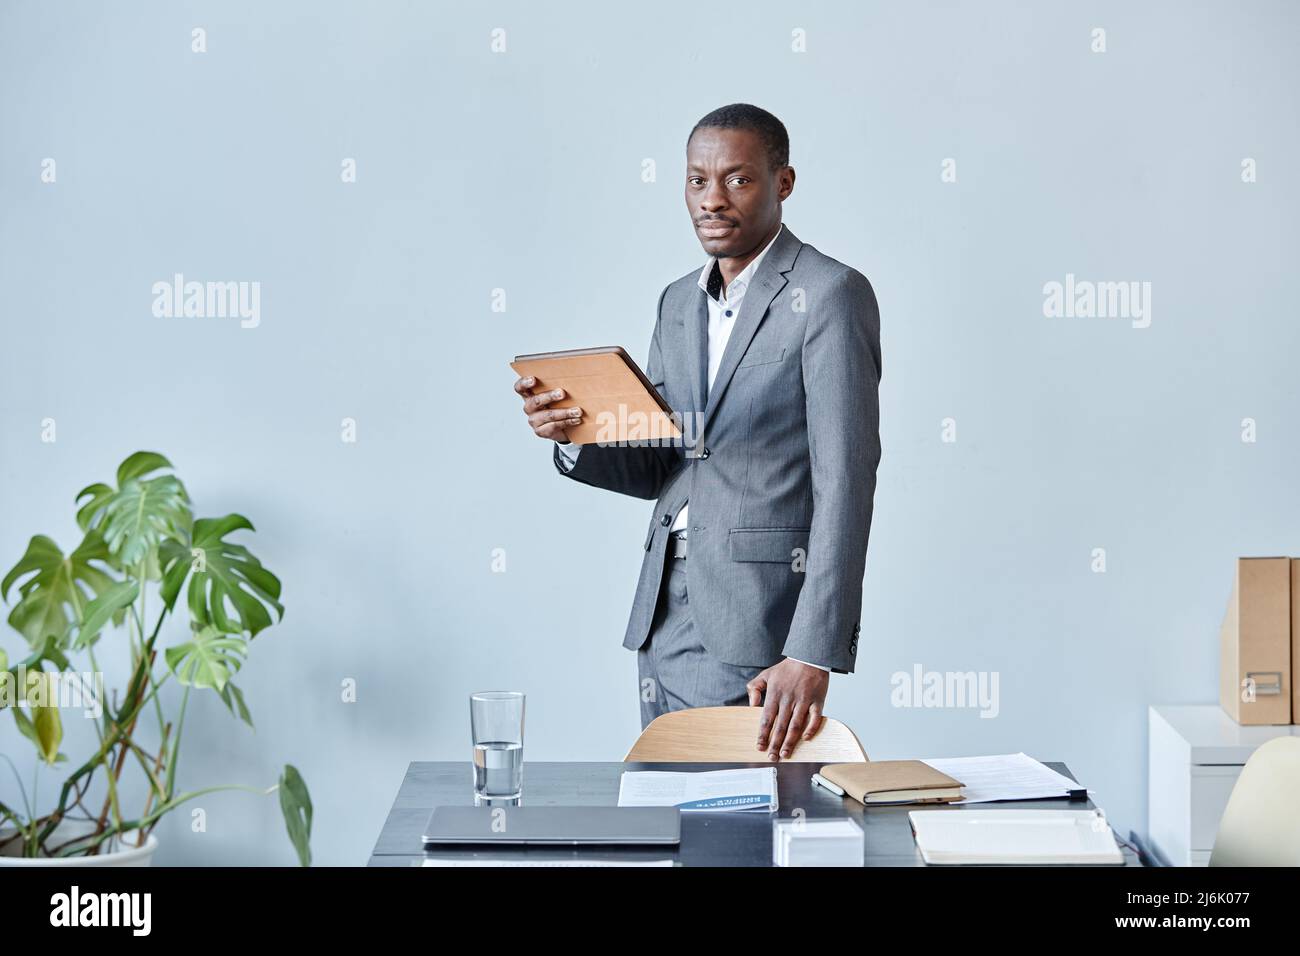 Minimales Porträt eines professionellen schwarzen Executive, der die Kamera anschaut, während er im Büro mit elegantem Anzug und Kopierraum gegen die blaue Wand steht Stockfoto